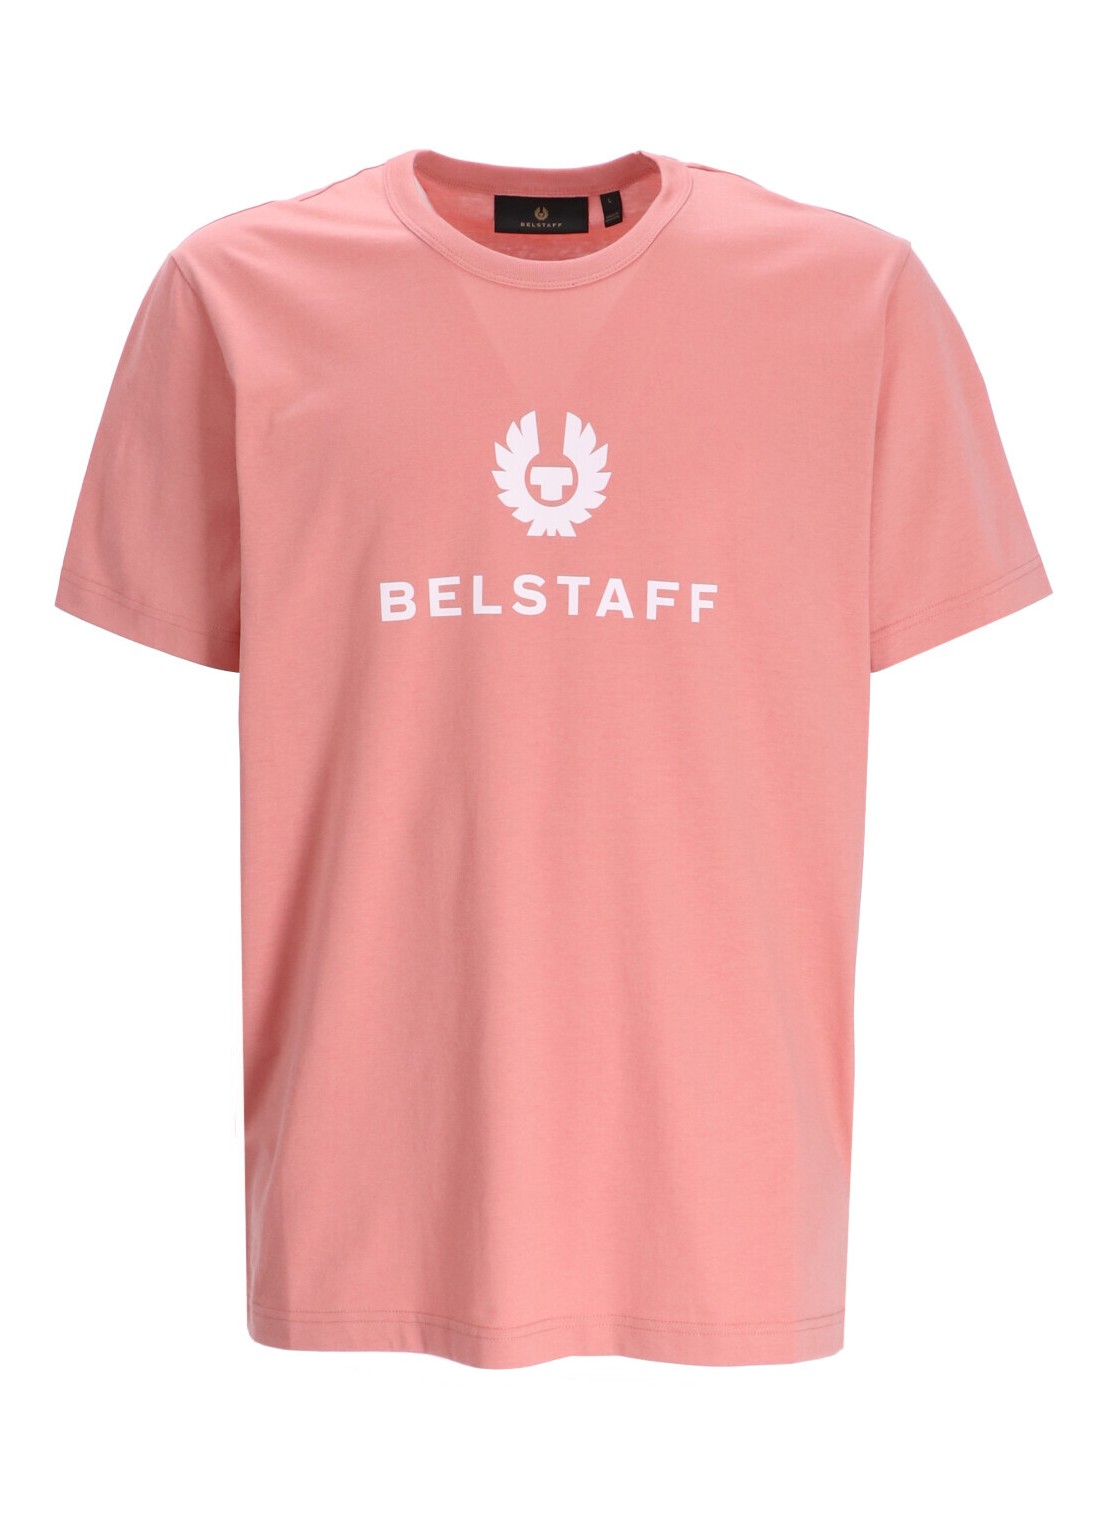 Camiseta belstaff t-shirt man belstaff signature t-shirt 104141 rstpk talla S
 